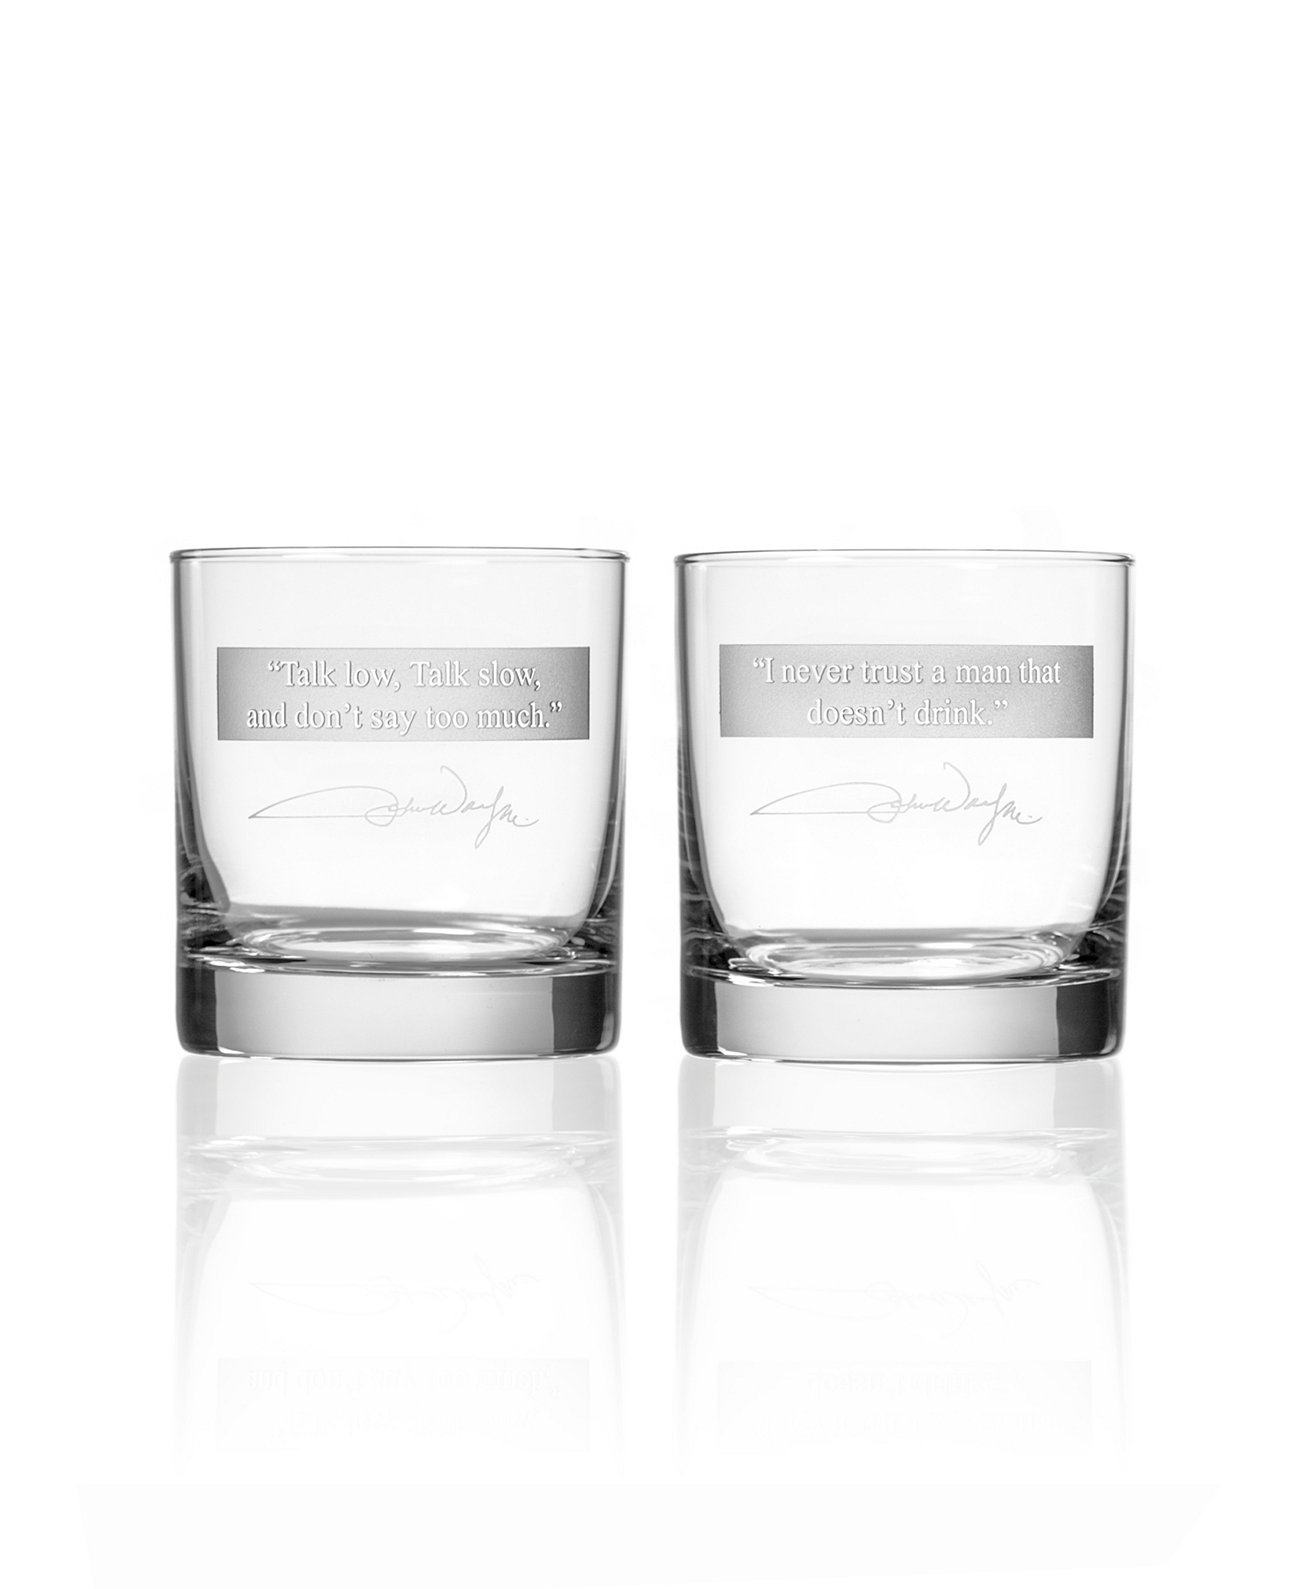 Джон Уэйн цитирует серию 1 на скалах 11 унций - набор из 2 стаканов Rolf Glass